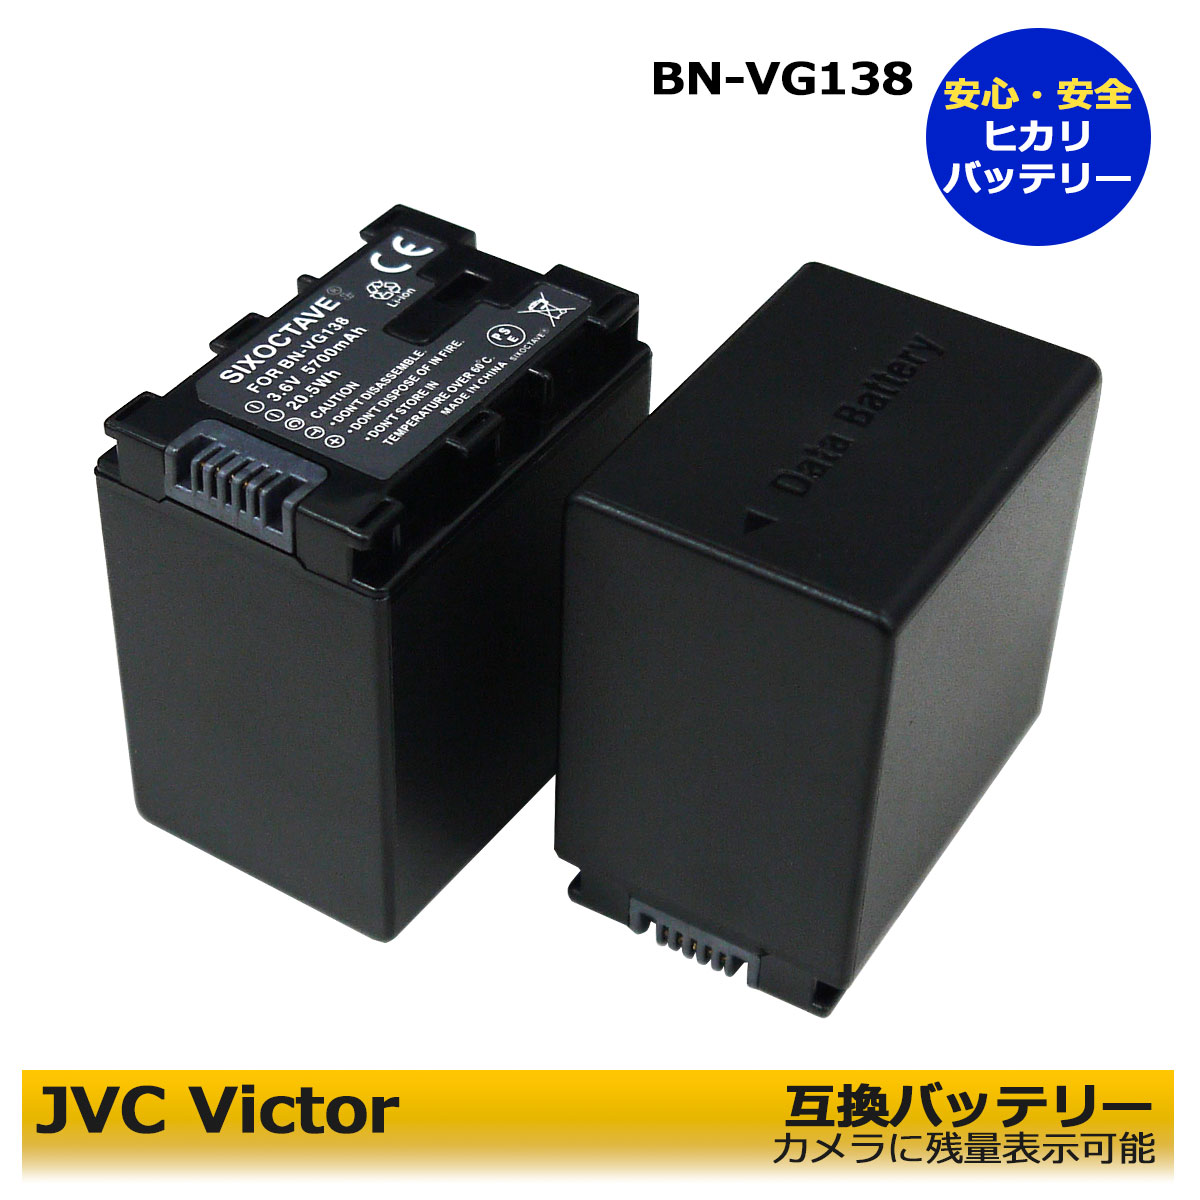 BN-VG138　BN-VG129 ★送料無料★ビクター 互換バッテリー　2個セット GV-LS1 / GV-LS2 / GZ-E66 / GZ-E109 / GZ-E117 / GZ-E140 / GZ-E150 / GZ-E155 / GZ-E180 / GZ-E220 / GZ-E225　純正＆互換充電器でも充電可能